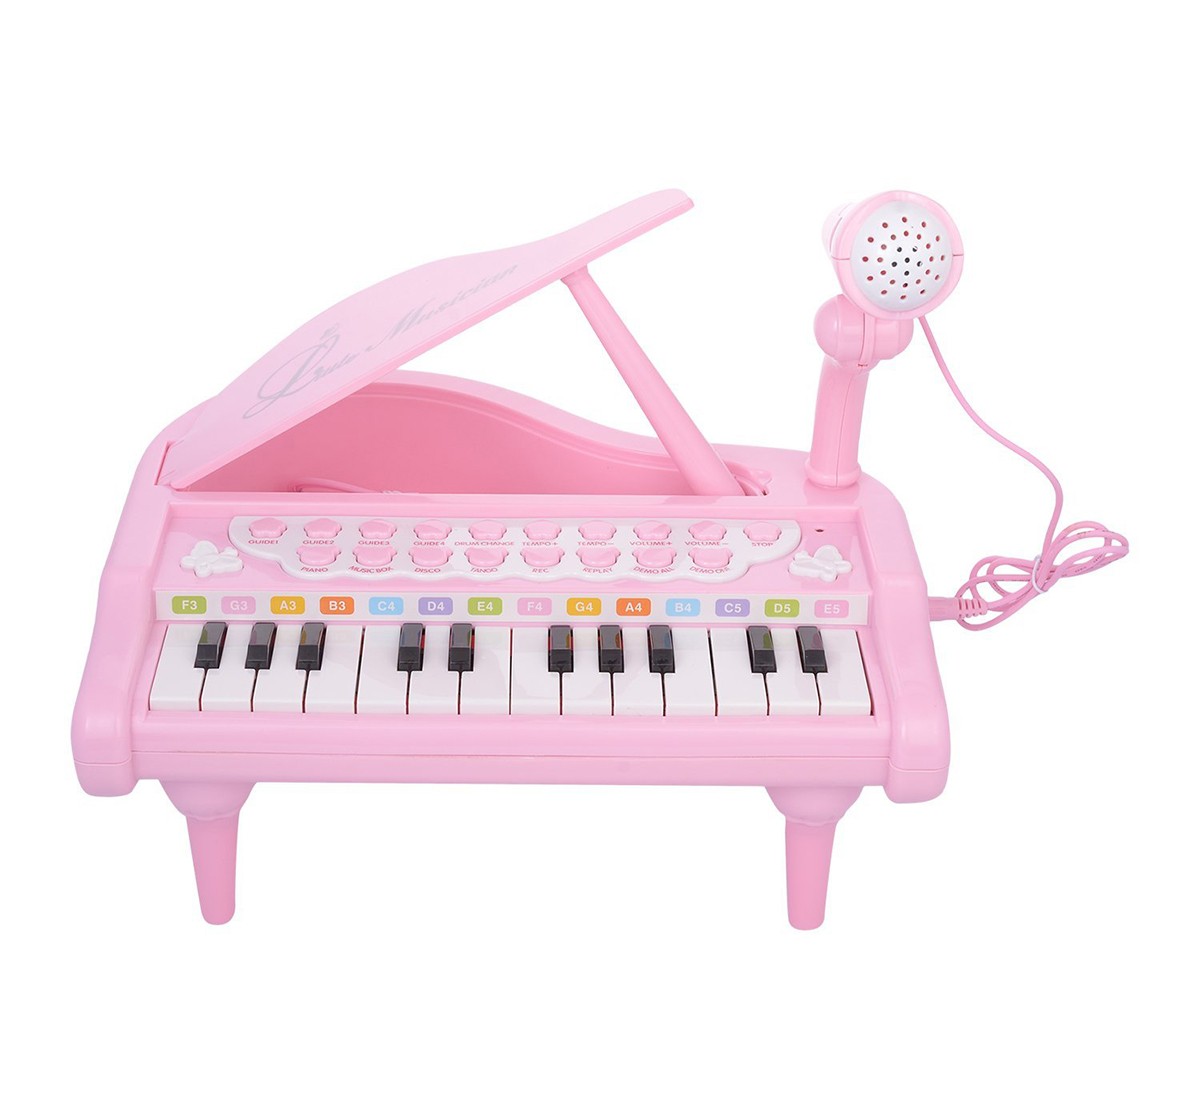 Baoli Comdaq Mini Table Top Piano for Kids age 3Y+ (Pink)